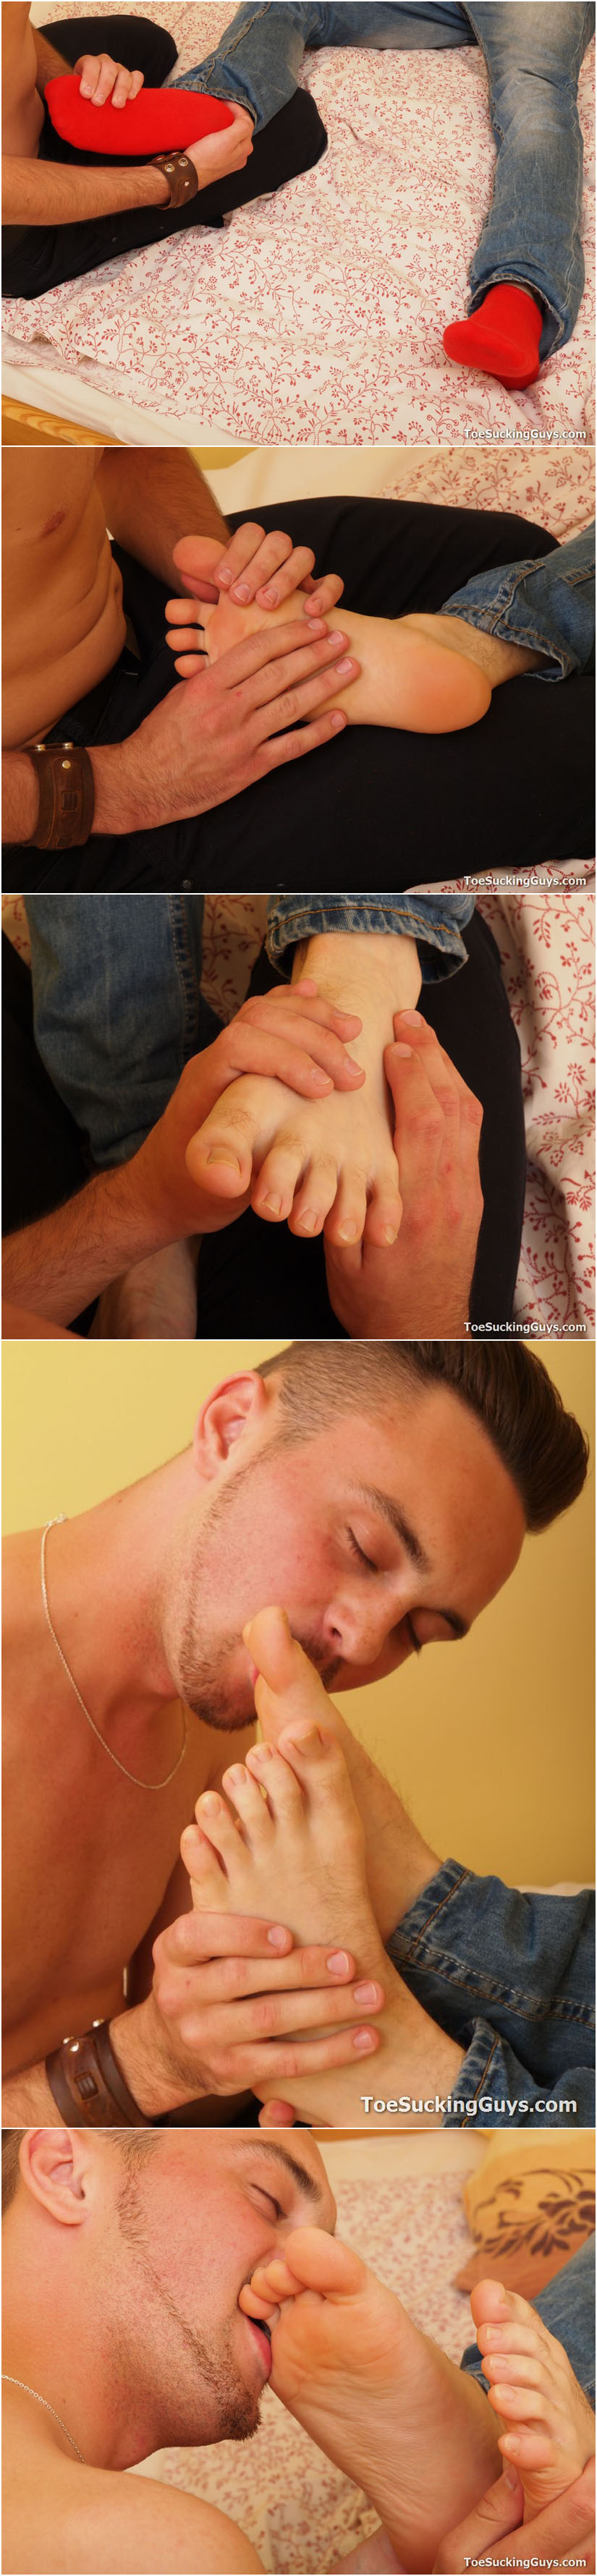 guy sucking his buddy's feet